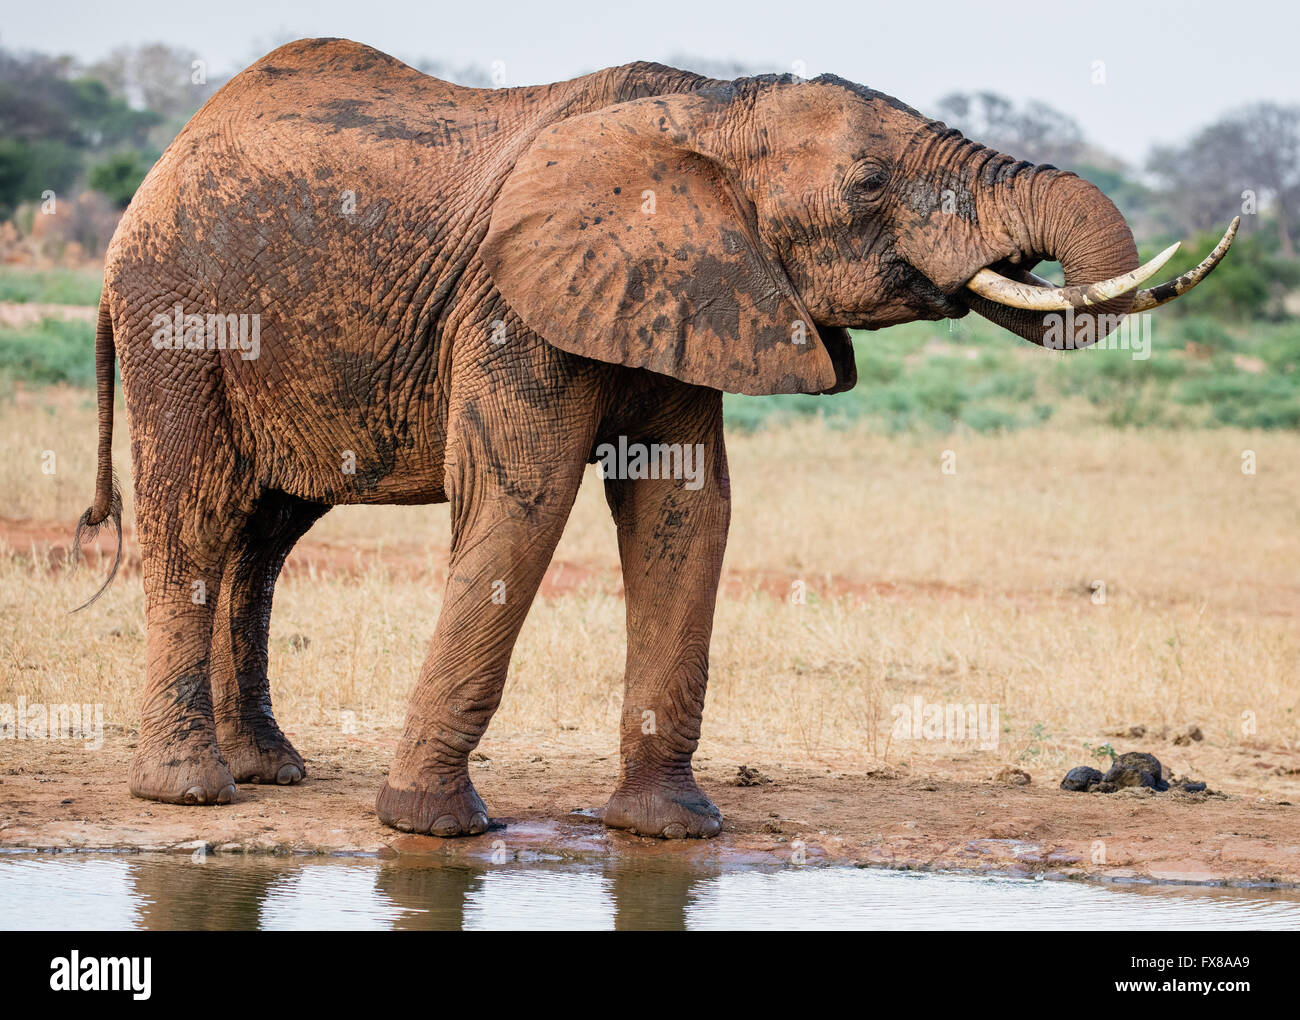 Afrikanischer Elefant Loxodonta Africanus trinken an einer Wasserstelle nach dem Besprühen mit Schlamm im Tsavo East National Park Südkenia Stockfoto